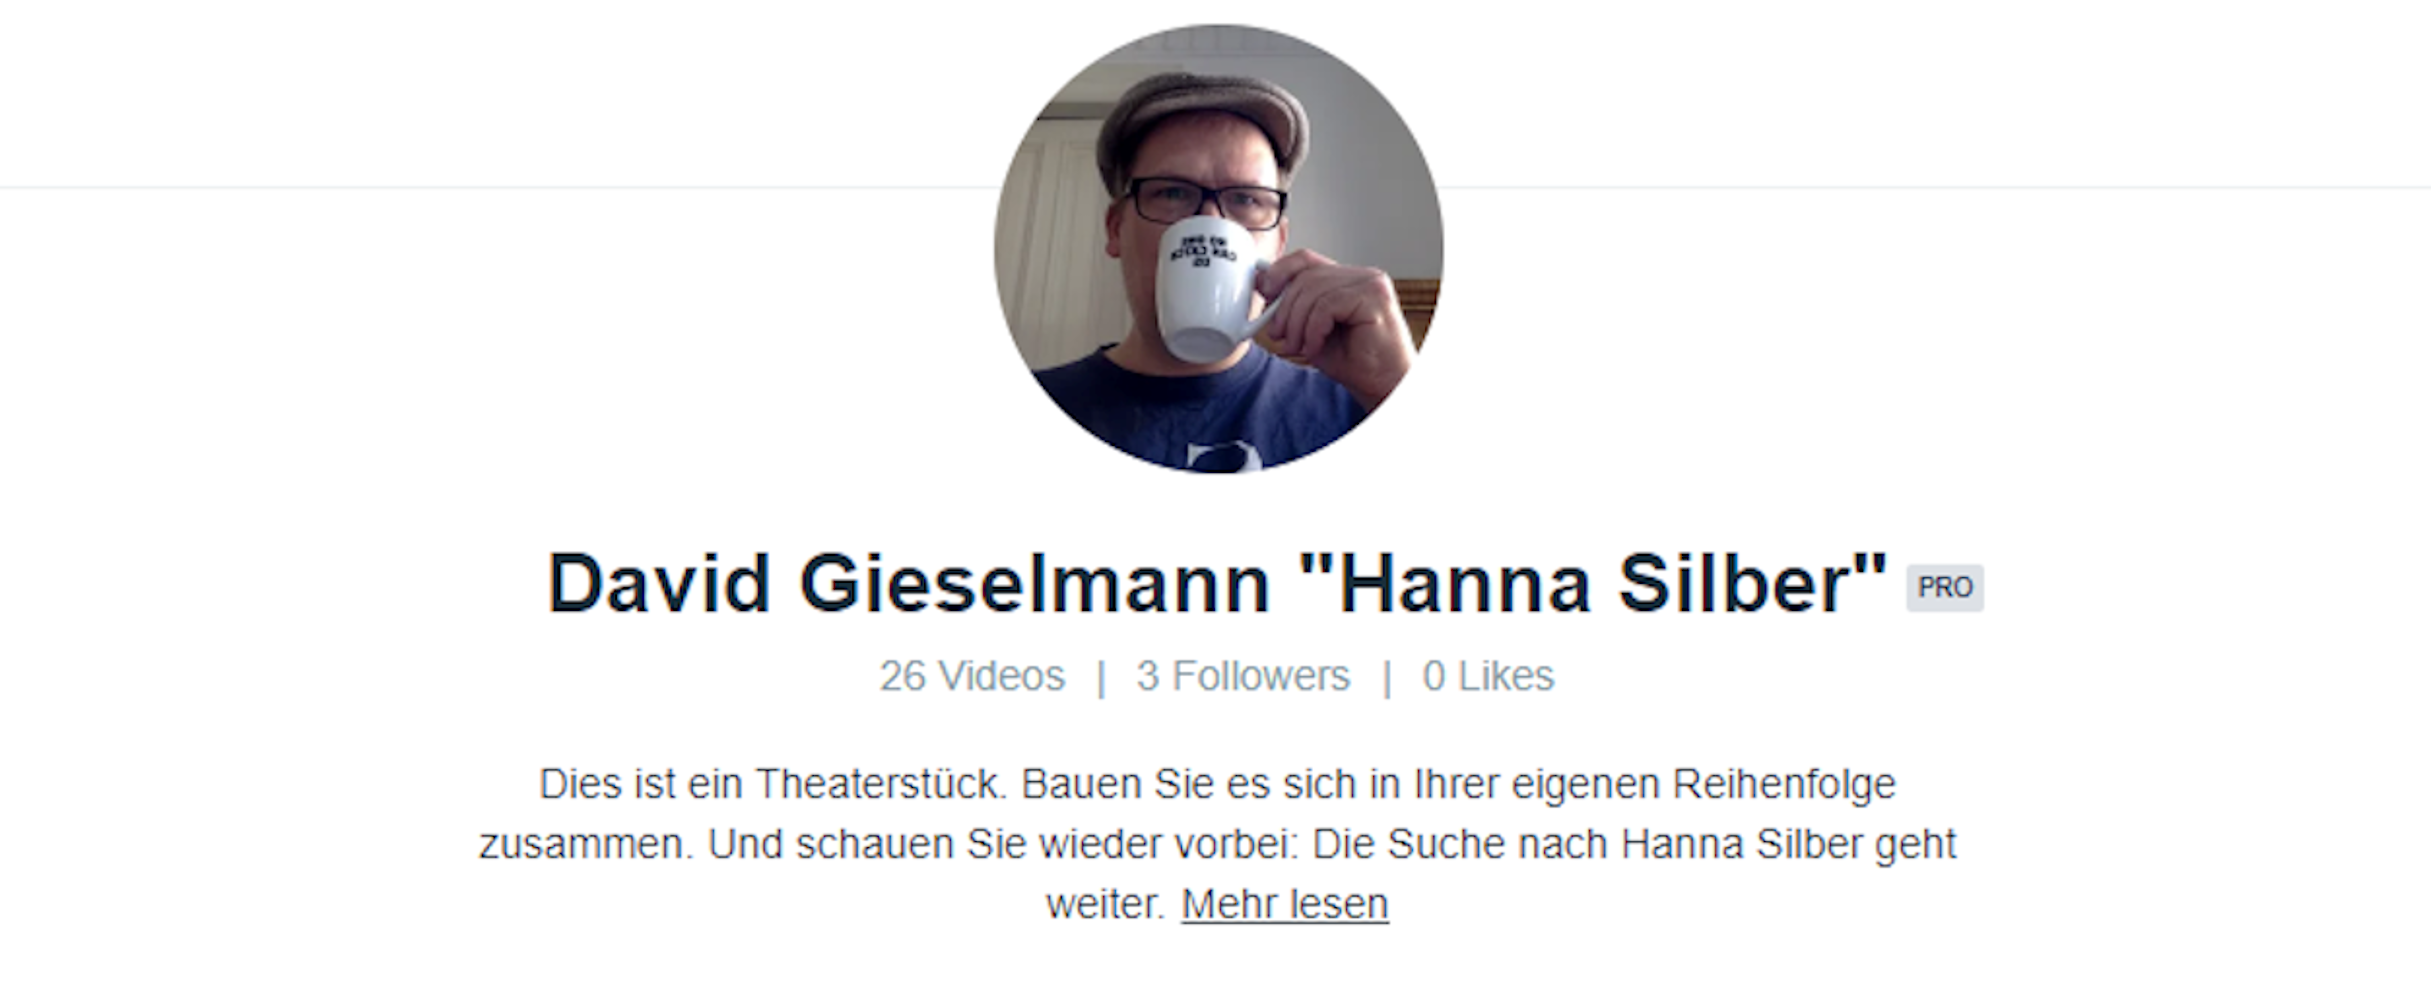 David Gieselmanns Netzstück "Hanna Silber" auf Vimeo